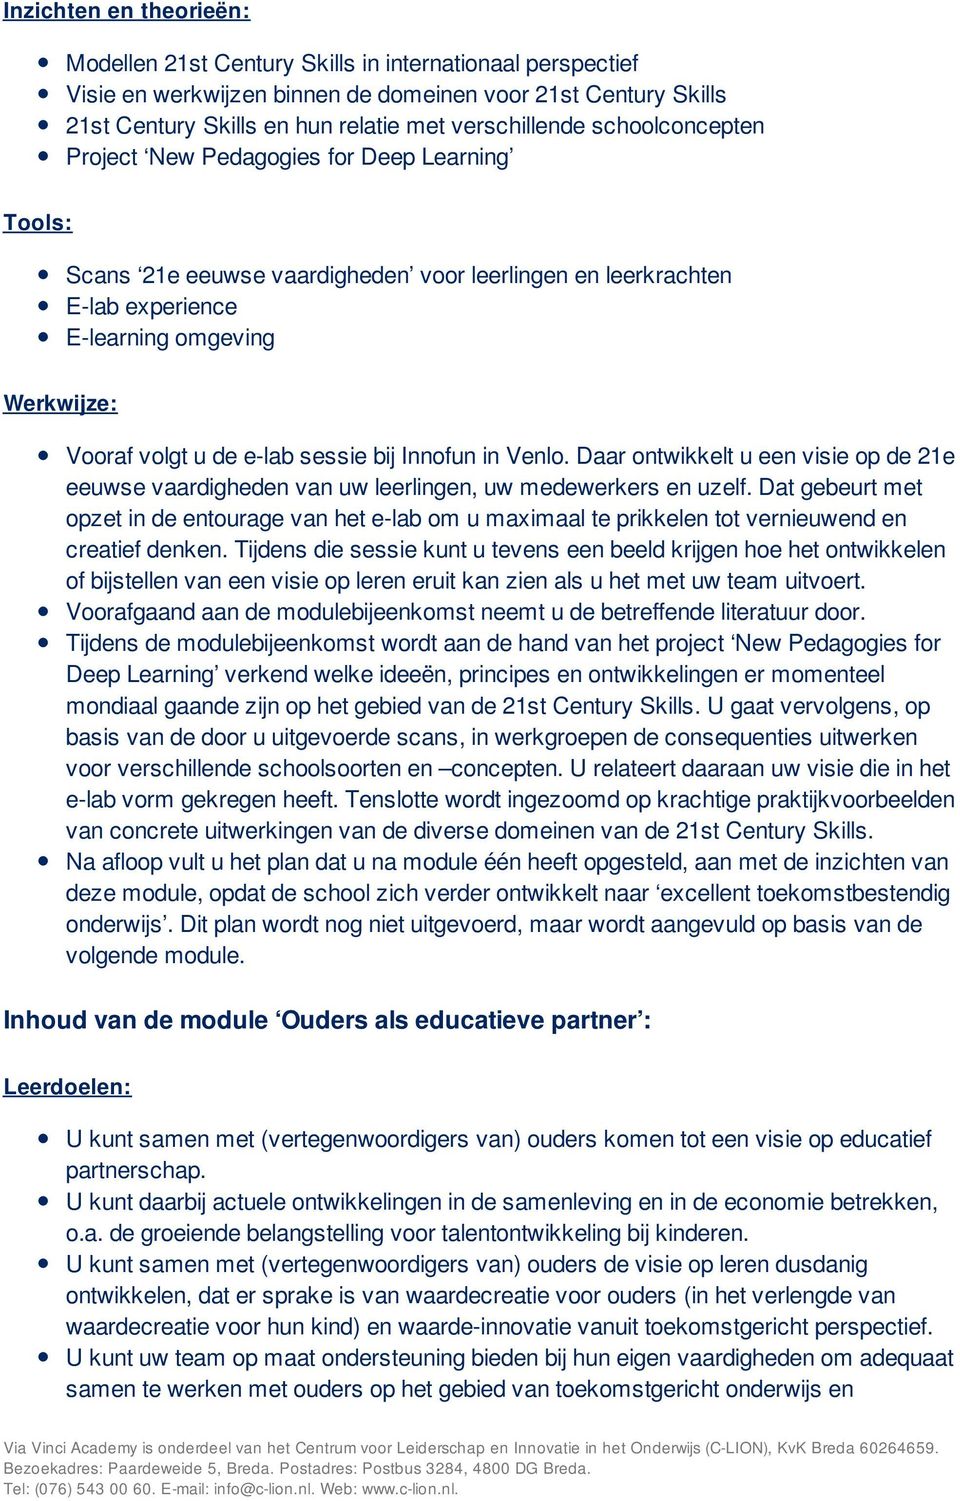 sessie bij Innofun in Venlo. Daar ontwikkelt u een visie op de 21e eeuwse vaardigheden van uw leerlingen, uw medewerkers en uzelf.